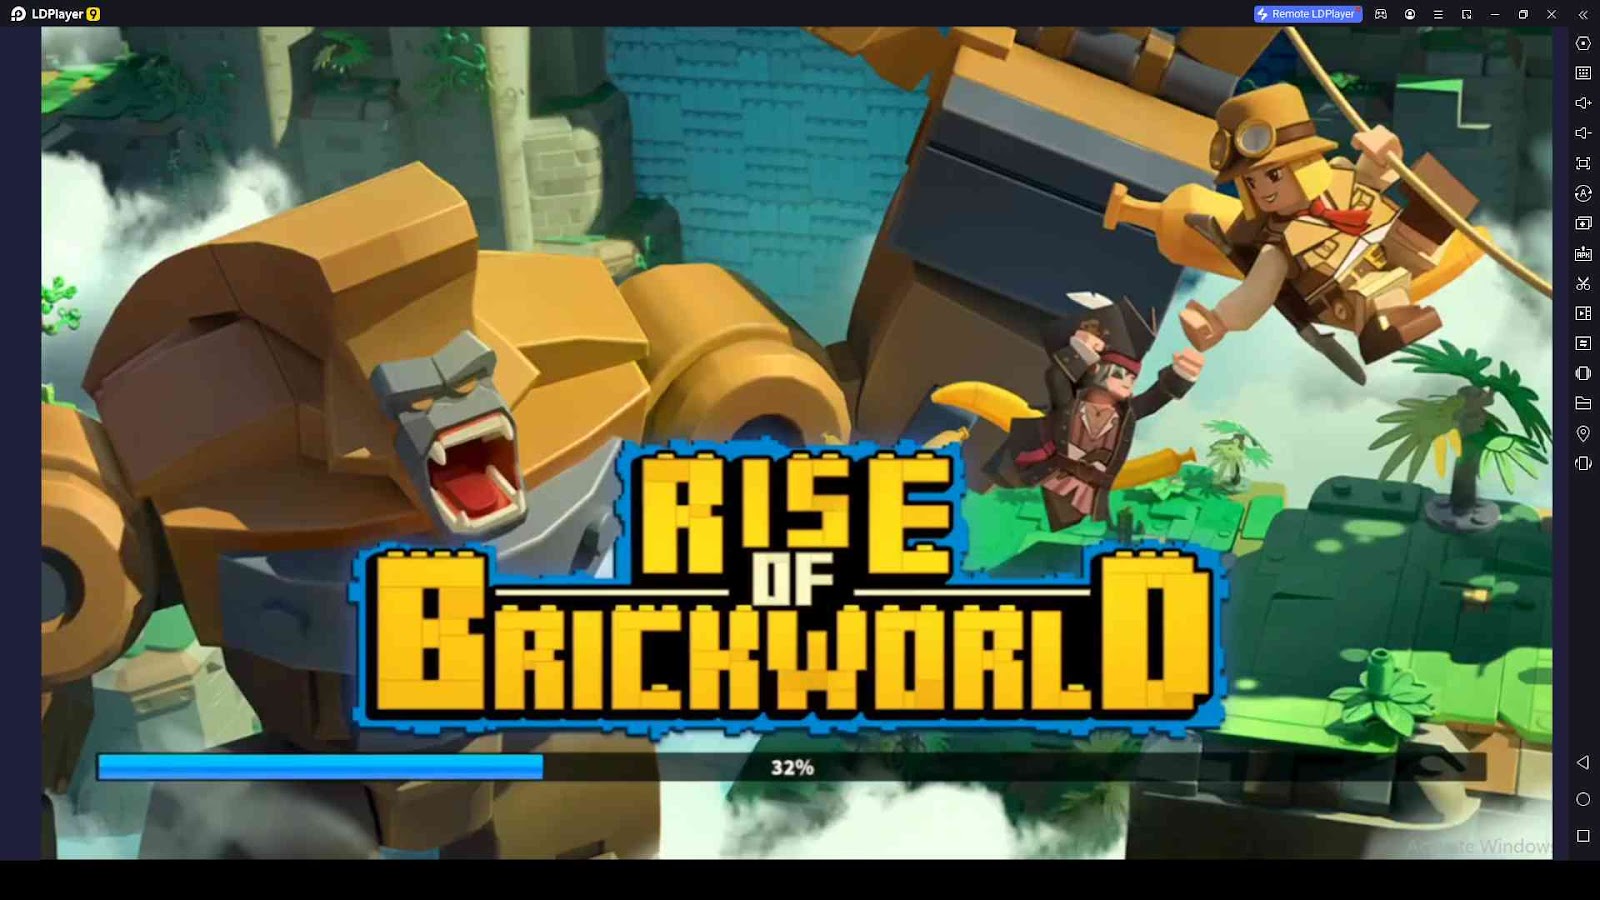 Rise of Brickworld Codes